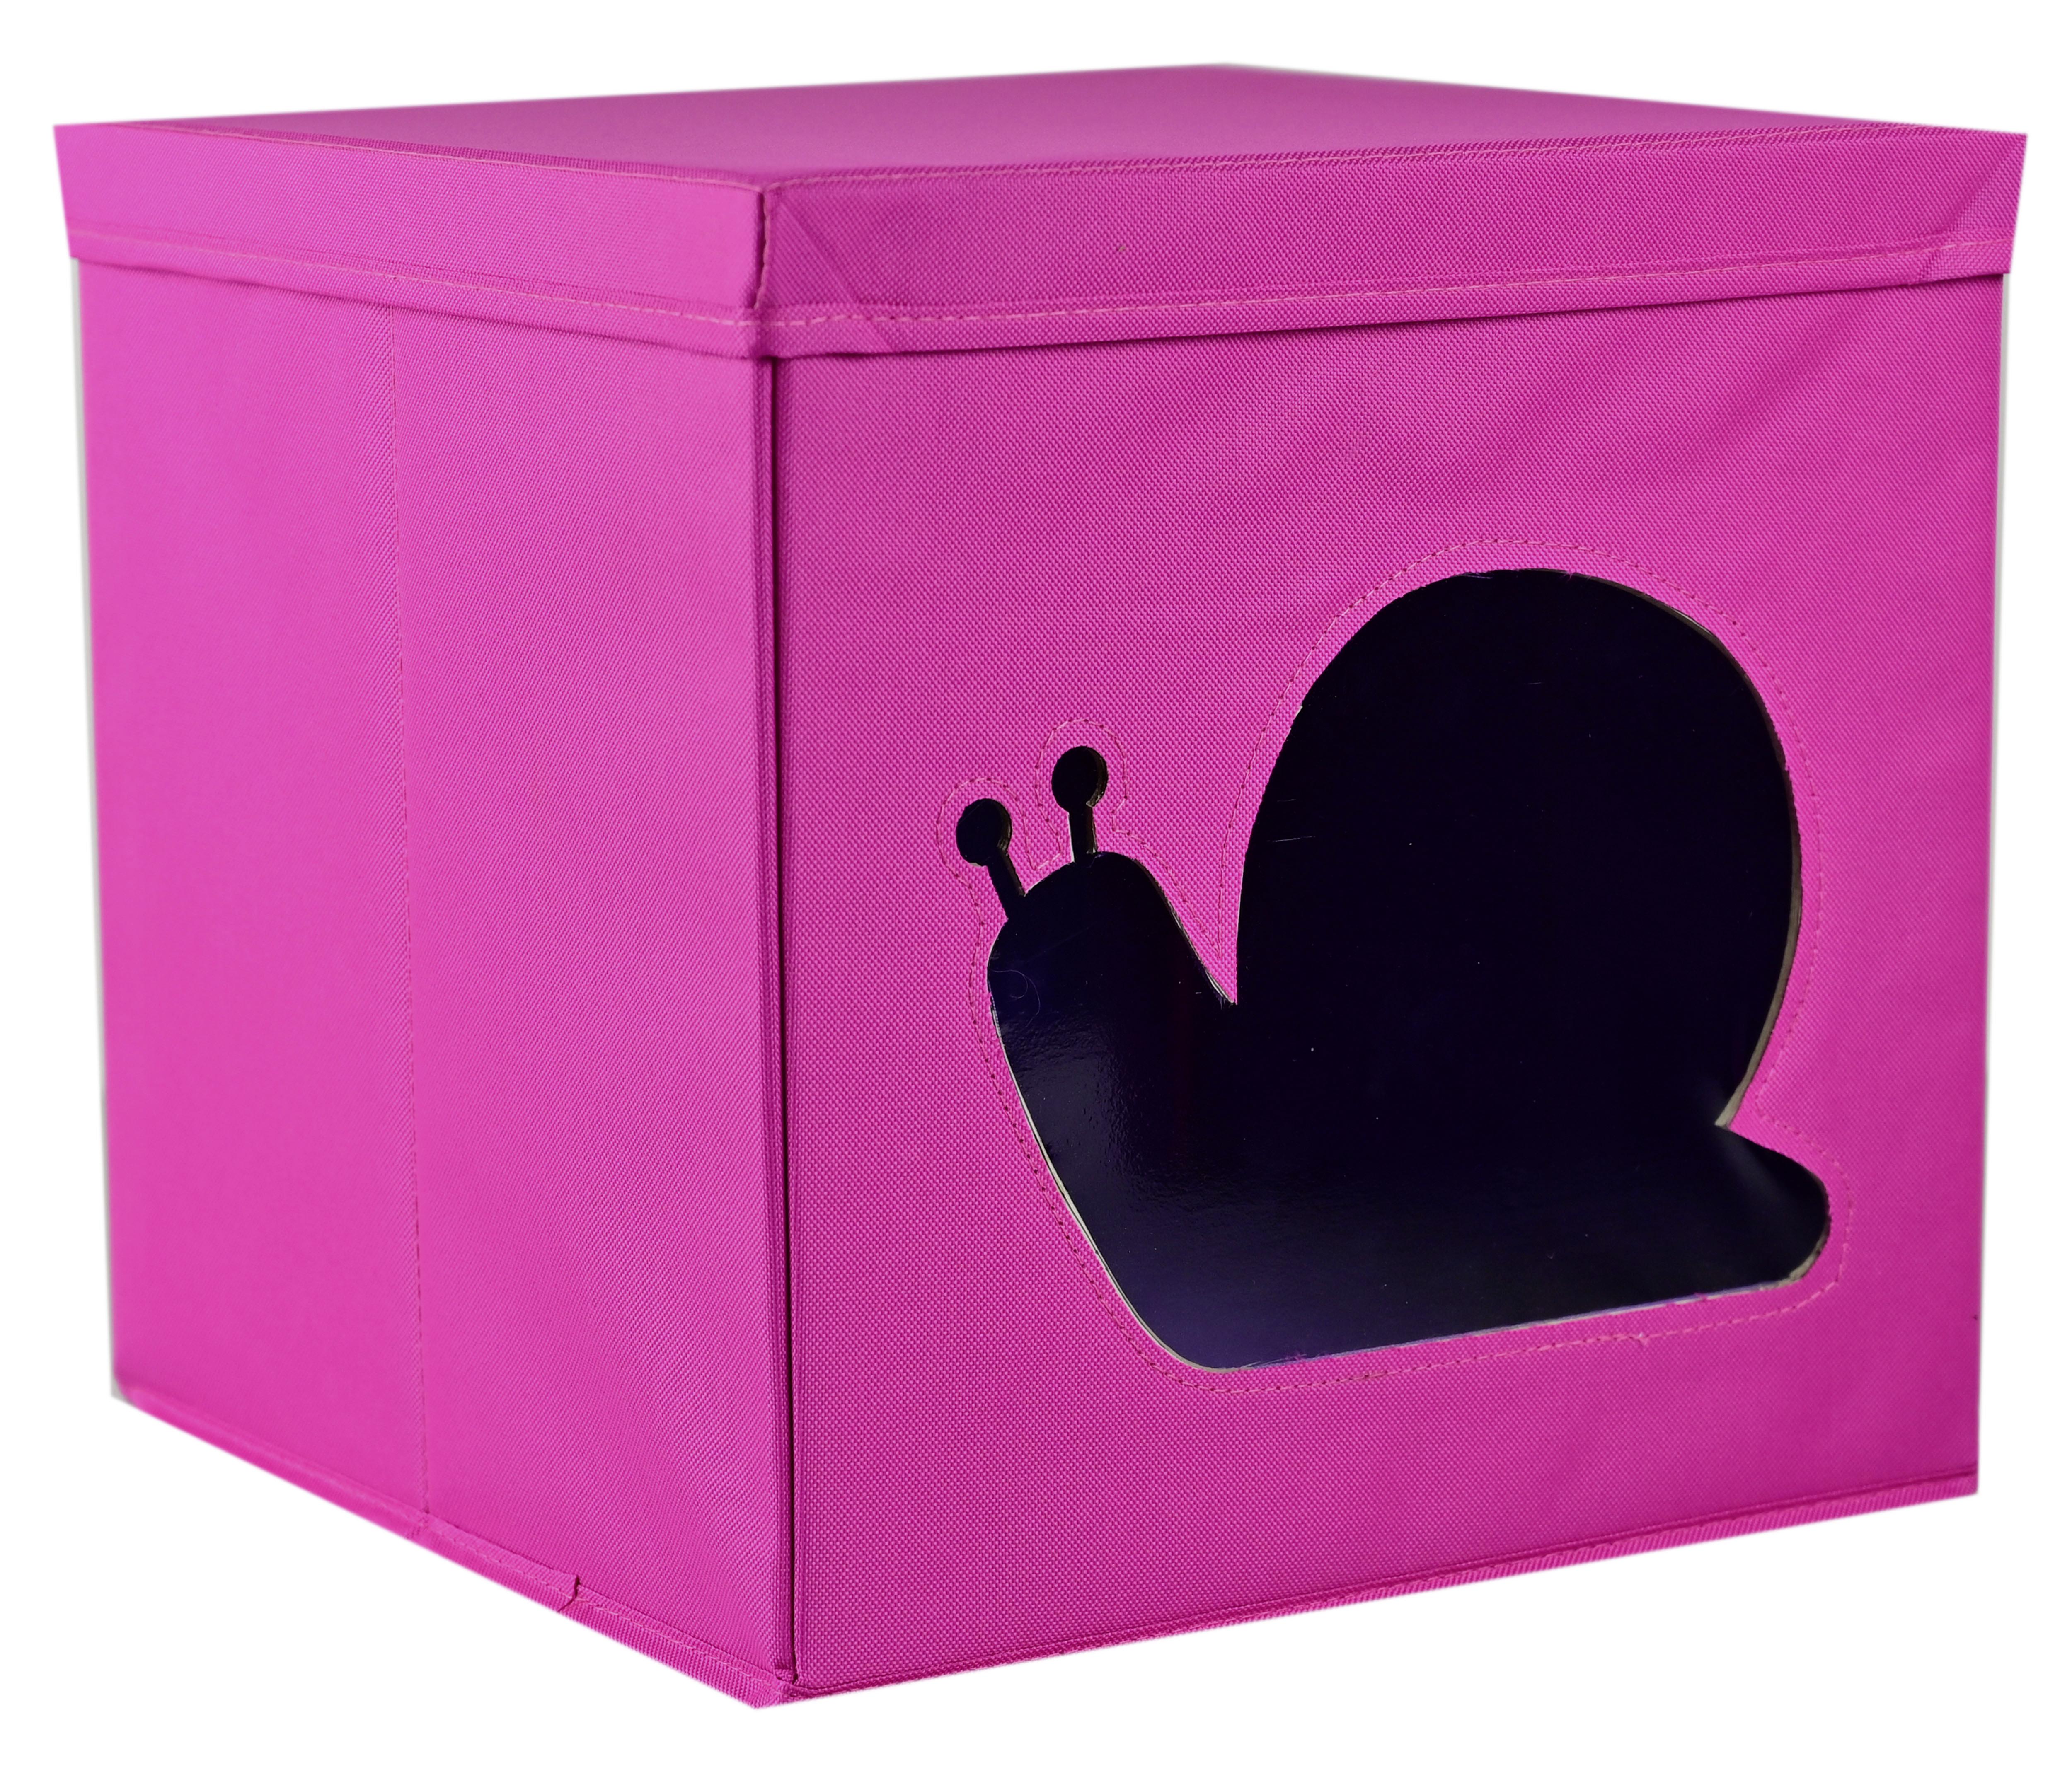 Skladacia Krabica Alisa, 33/32/33cm - lila/ružová, kartón/textil (33/32/33cm) - Modern Living